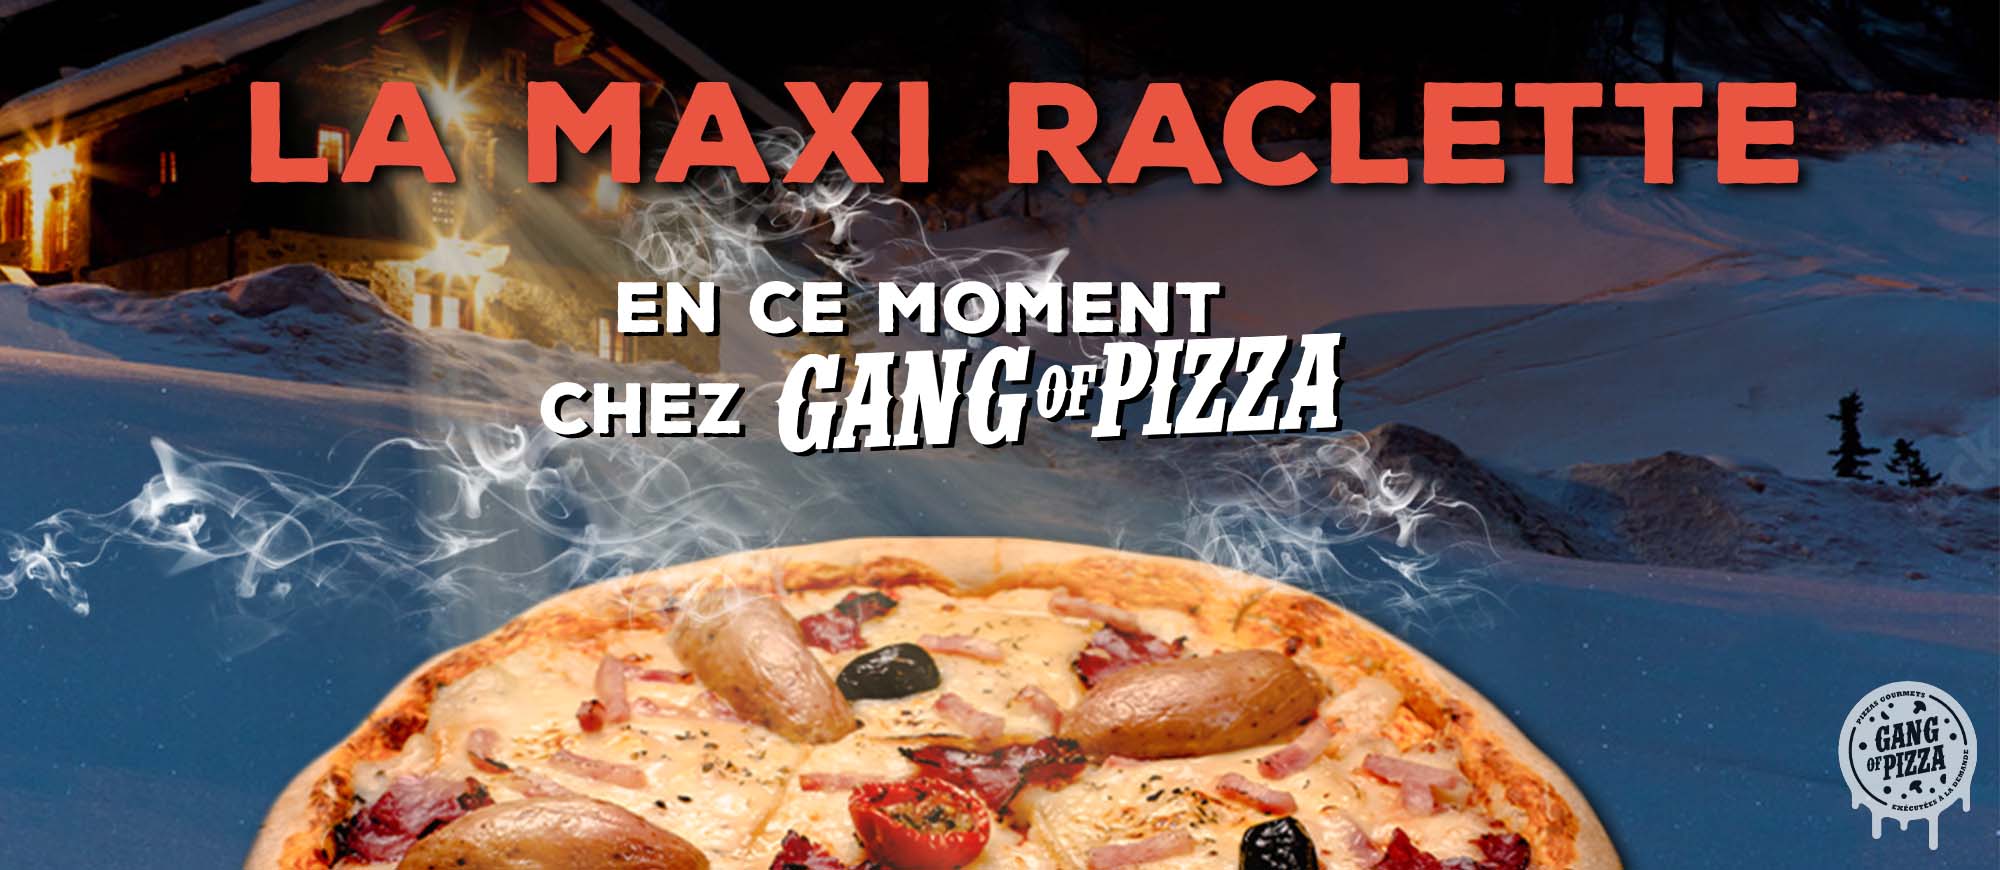 la-maxi-raclette-est-en-ce-moment-chez-gang-of-pizza-actu-actualite-rapide-gourmet-recette-hiver